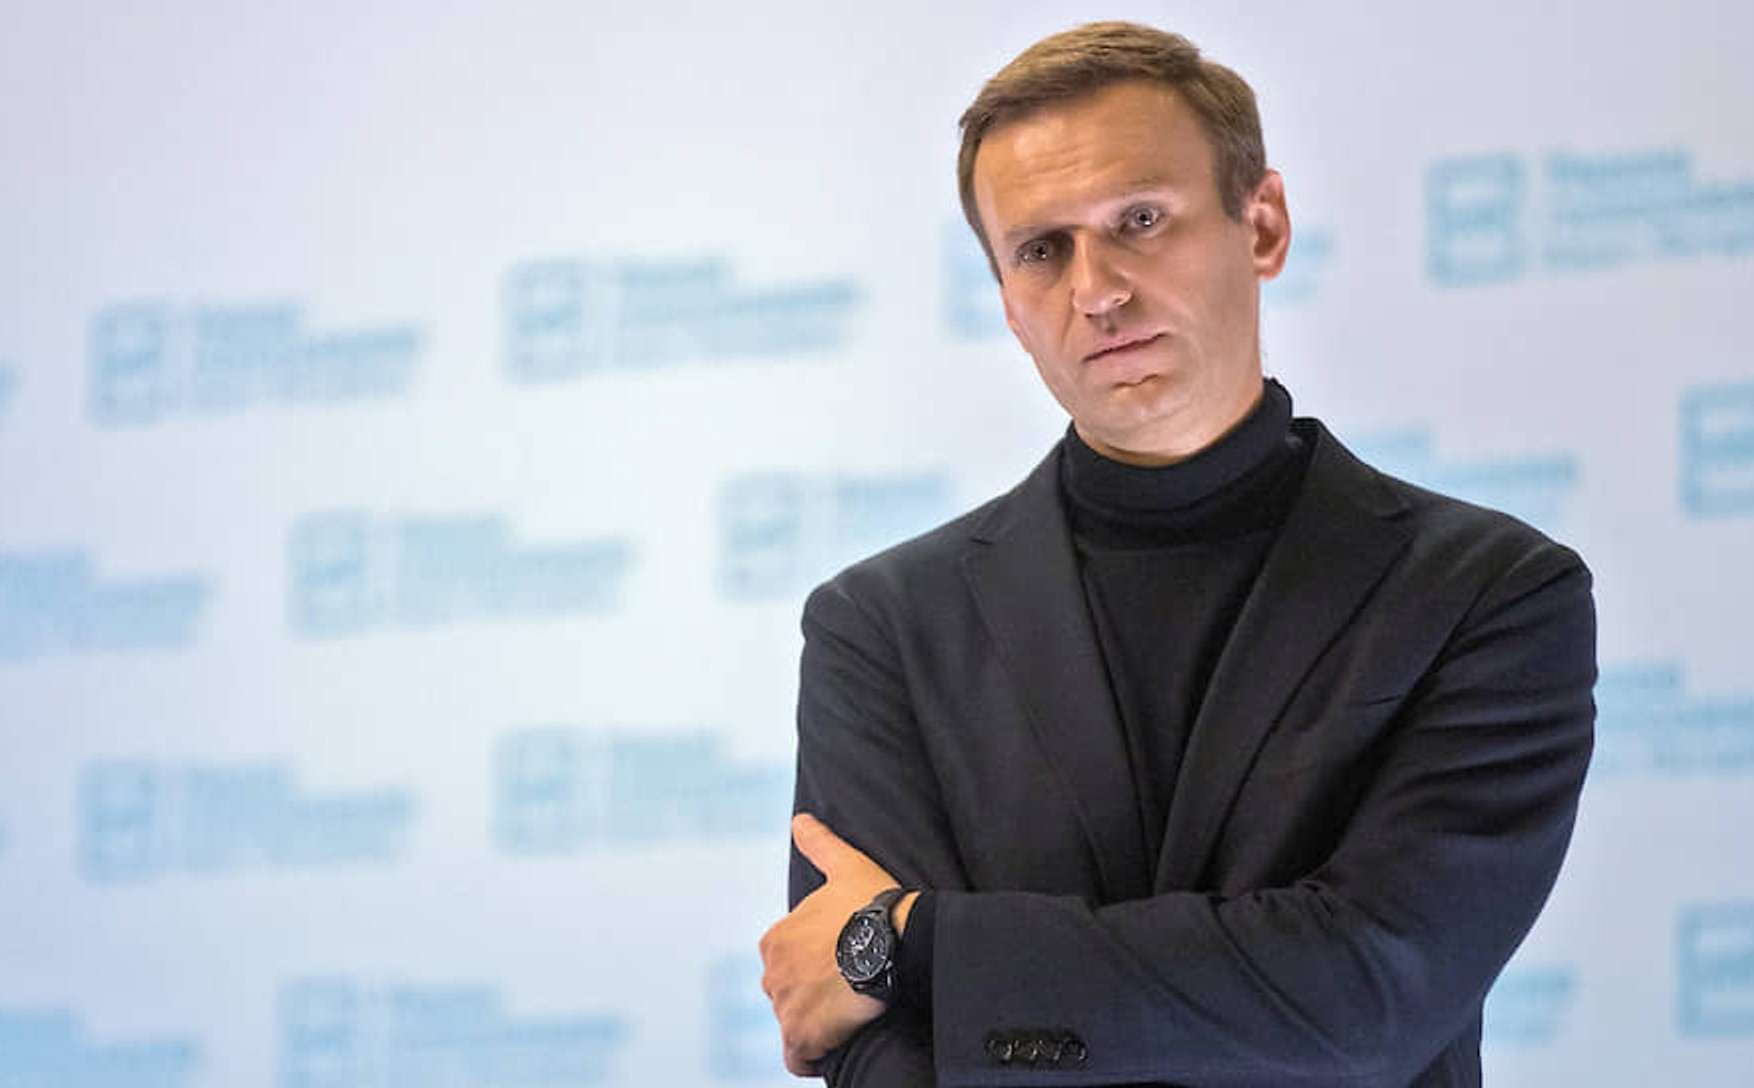 Грузинське видання Ambebi опублікувало фейковий інтерв'ю Навального, яке він нібито дав з колонії